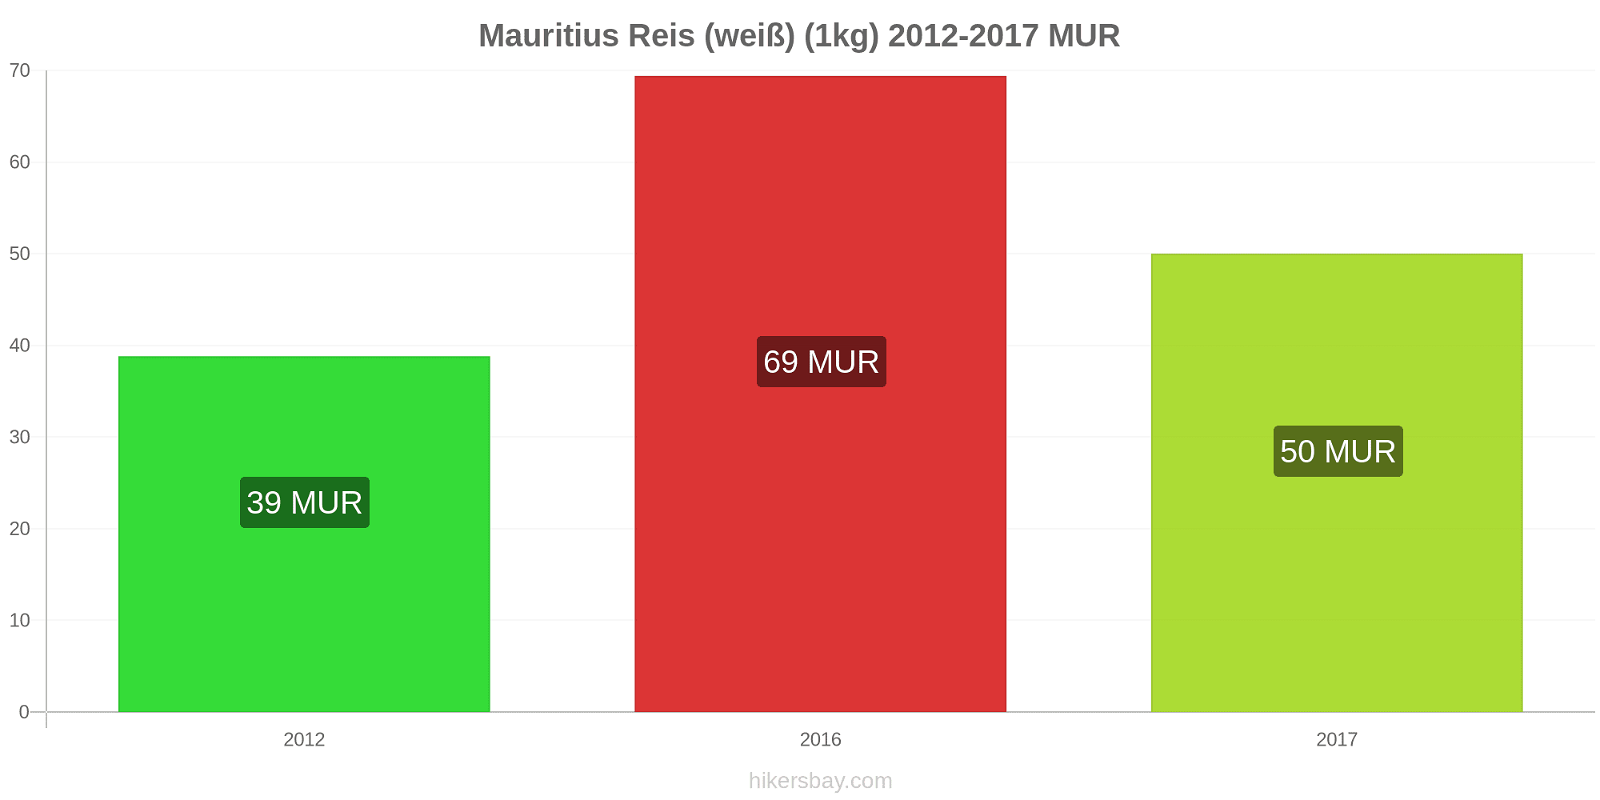 Mauritius Preisänderungen Reis (weiß) (1kg) hikersbay.com